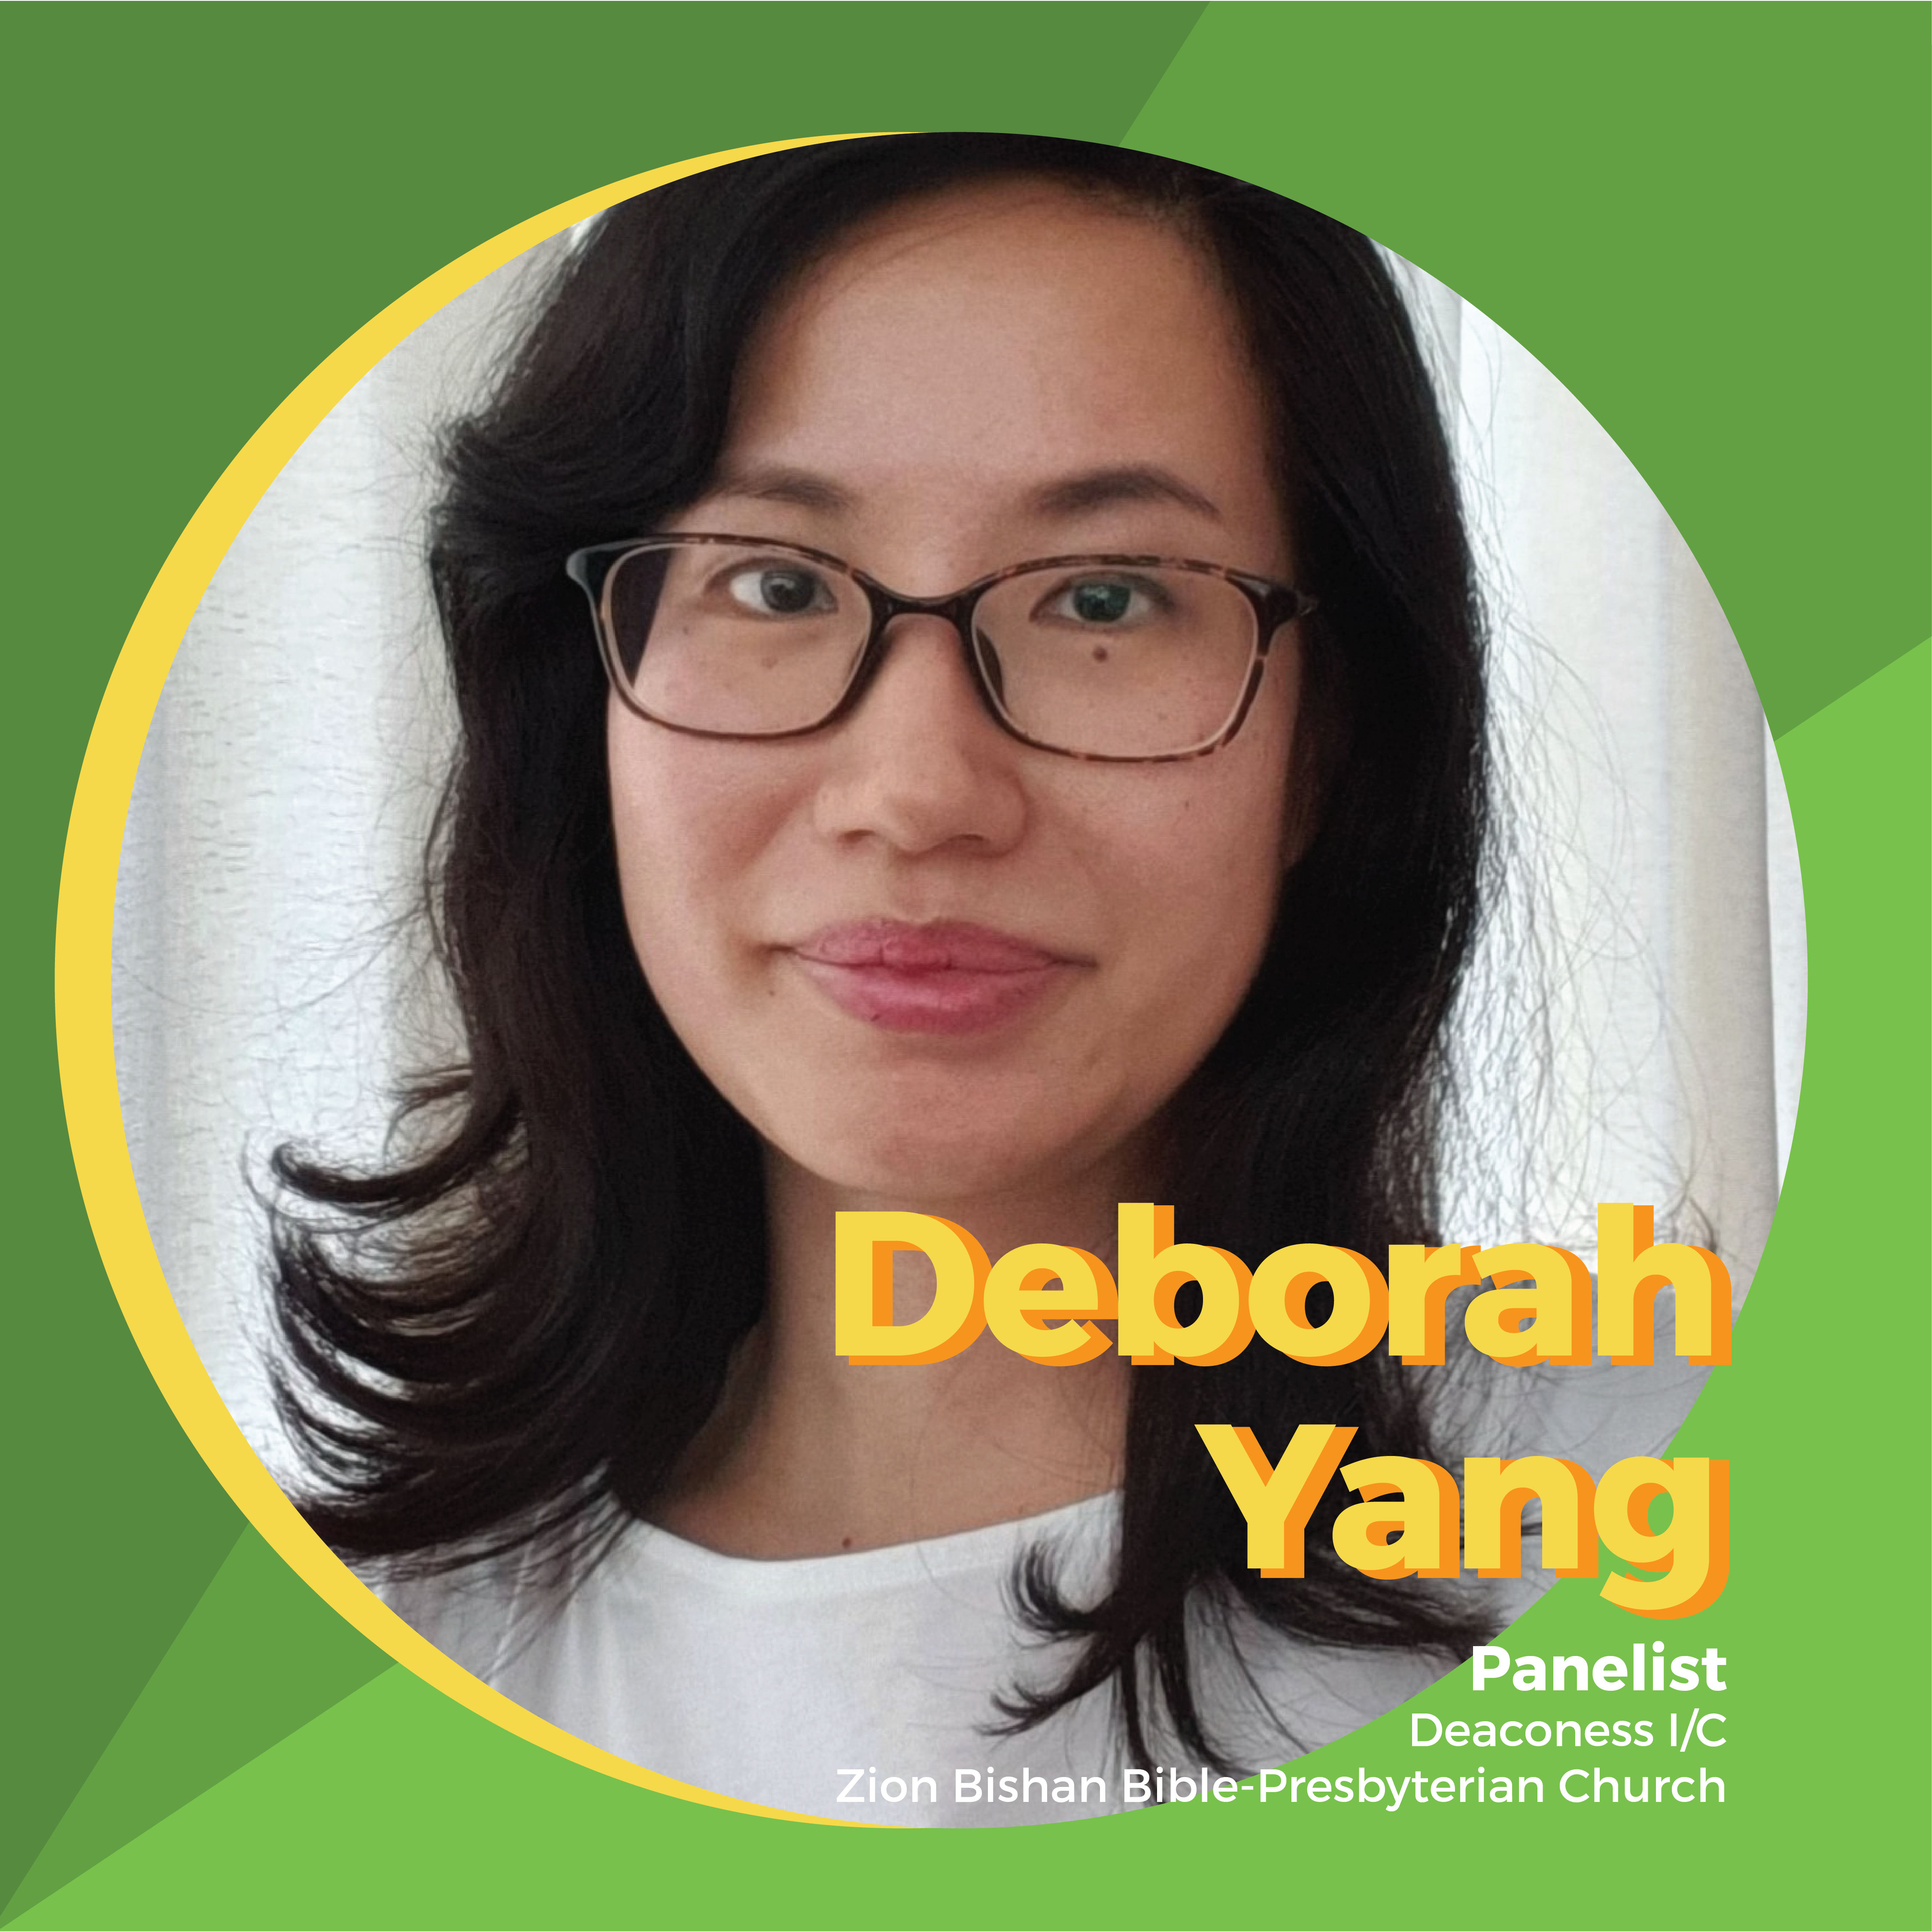 Deborah Yang